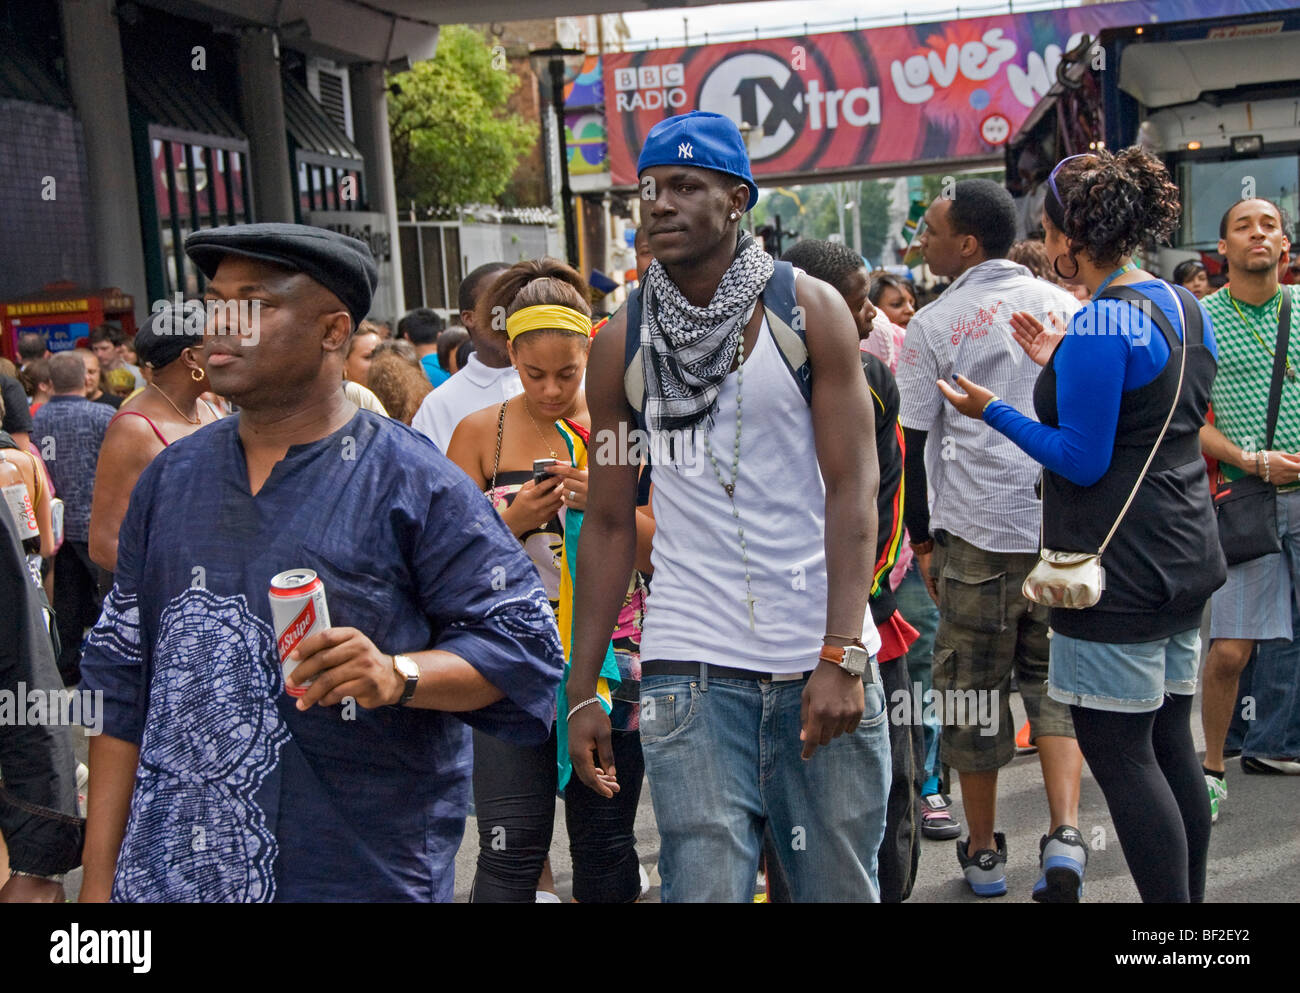 Atestada calle multicultural en el carnaval de Notting Hill en el oeste de Londres Foto de stock